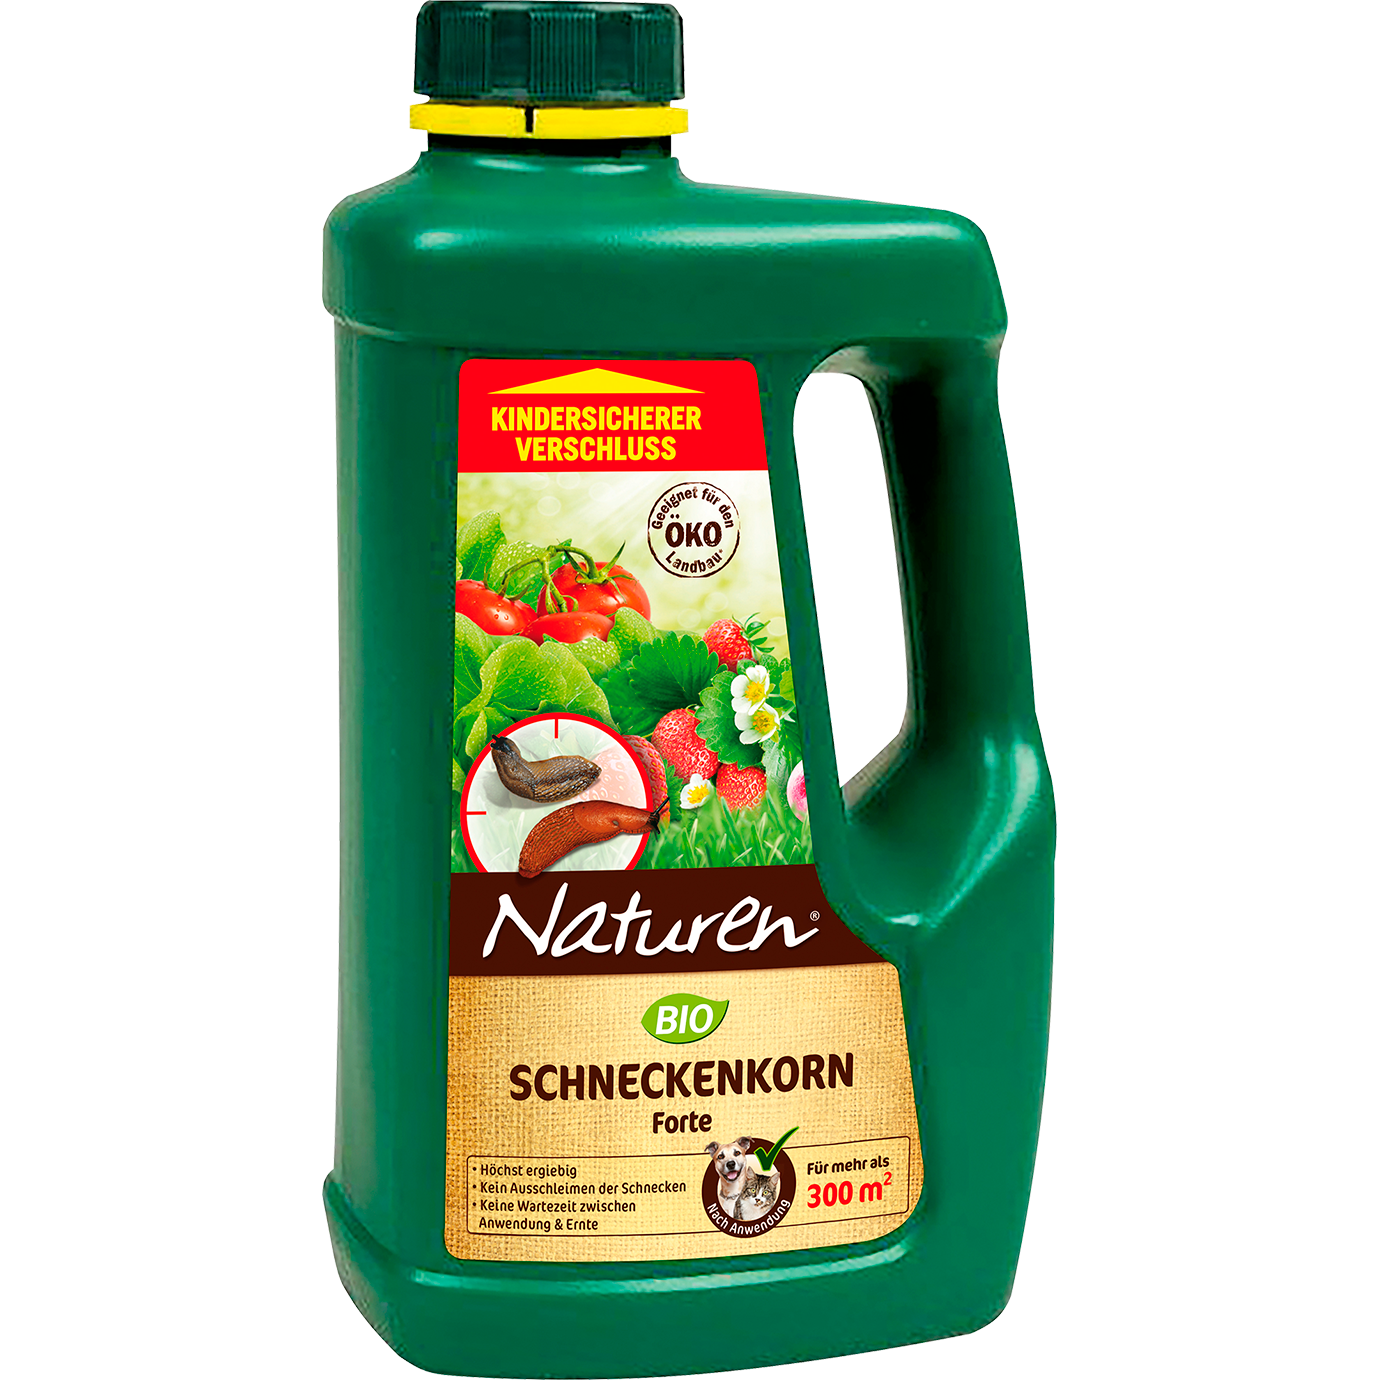 Naturen® Bio Schneckenkorn Forte